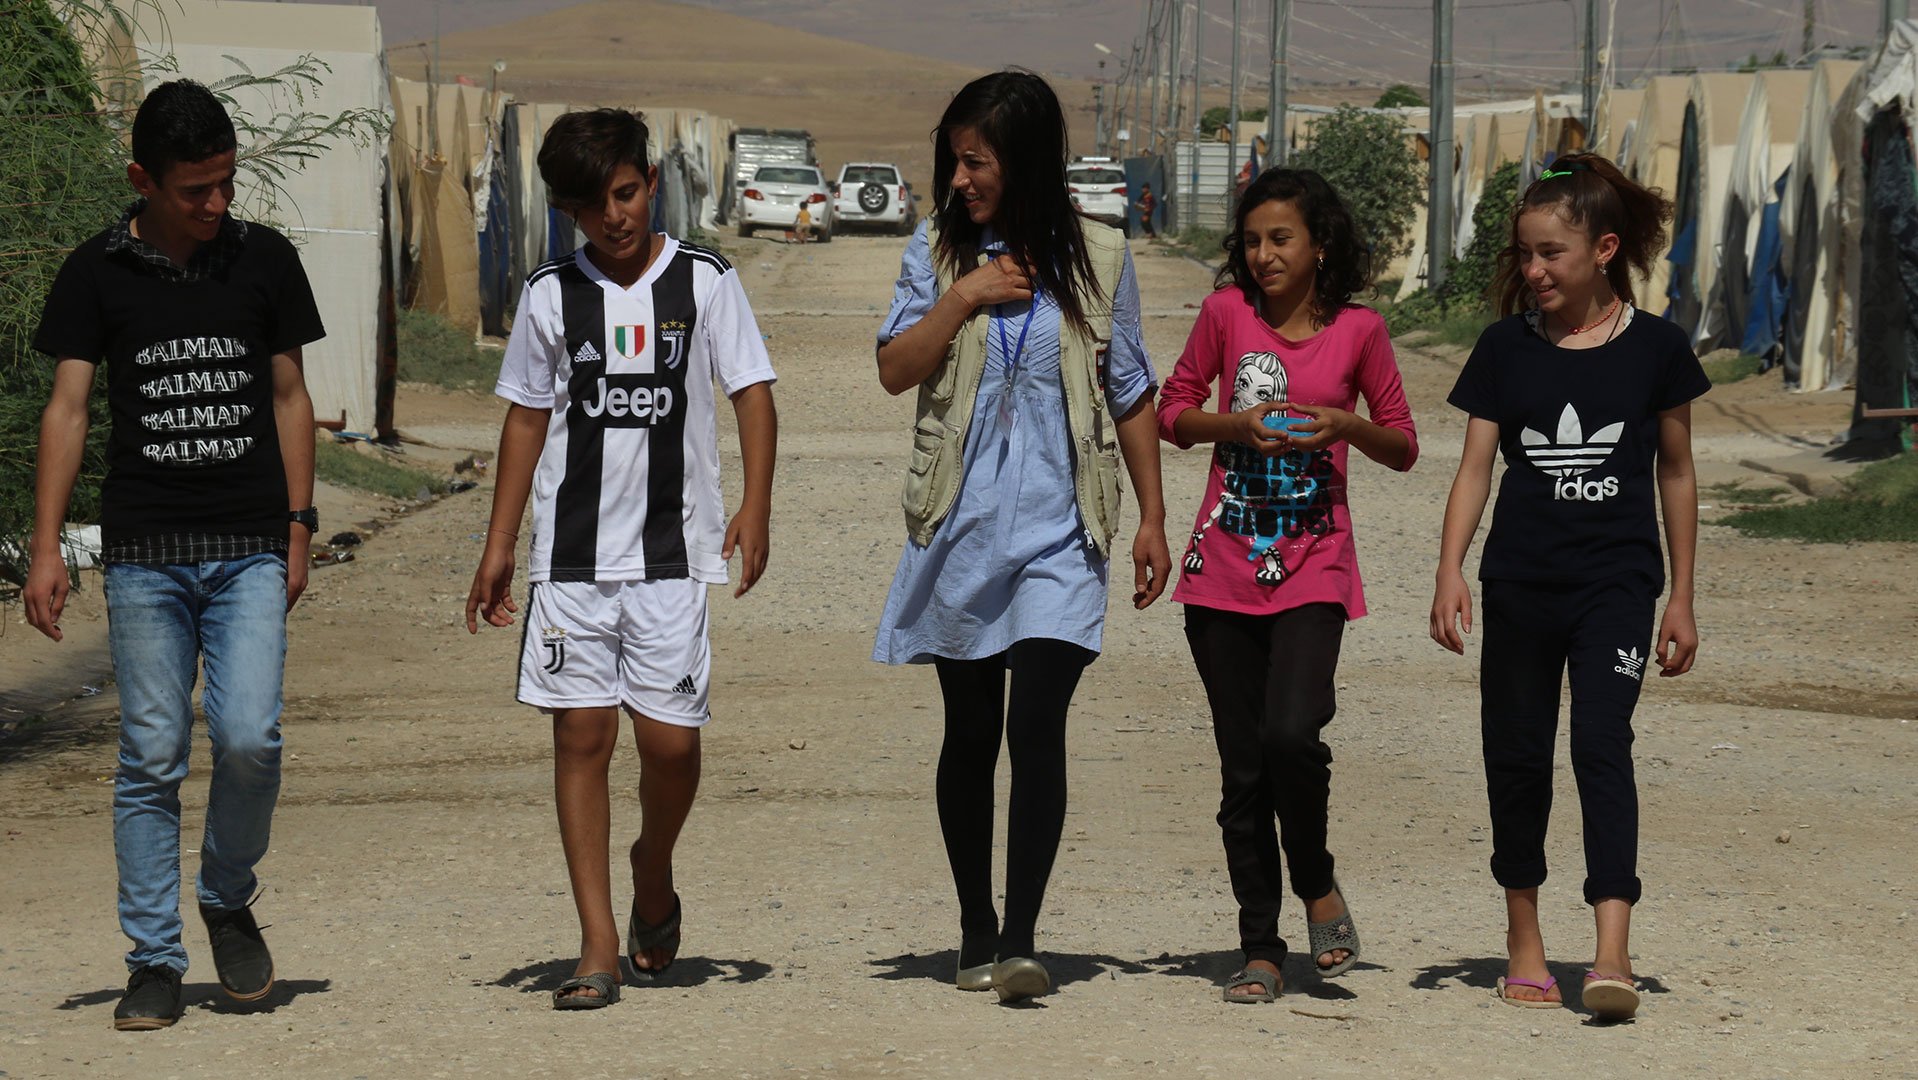 Irak - War Child helpt kinderen in oorlog weer kind zijn op veilige plekken